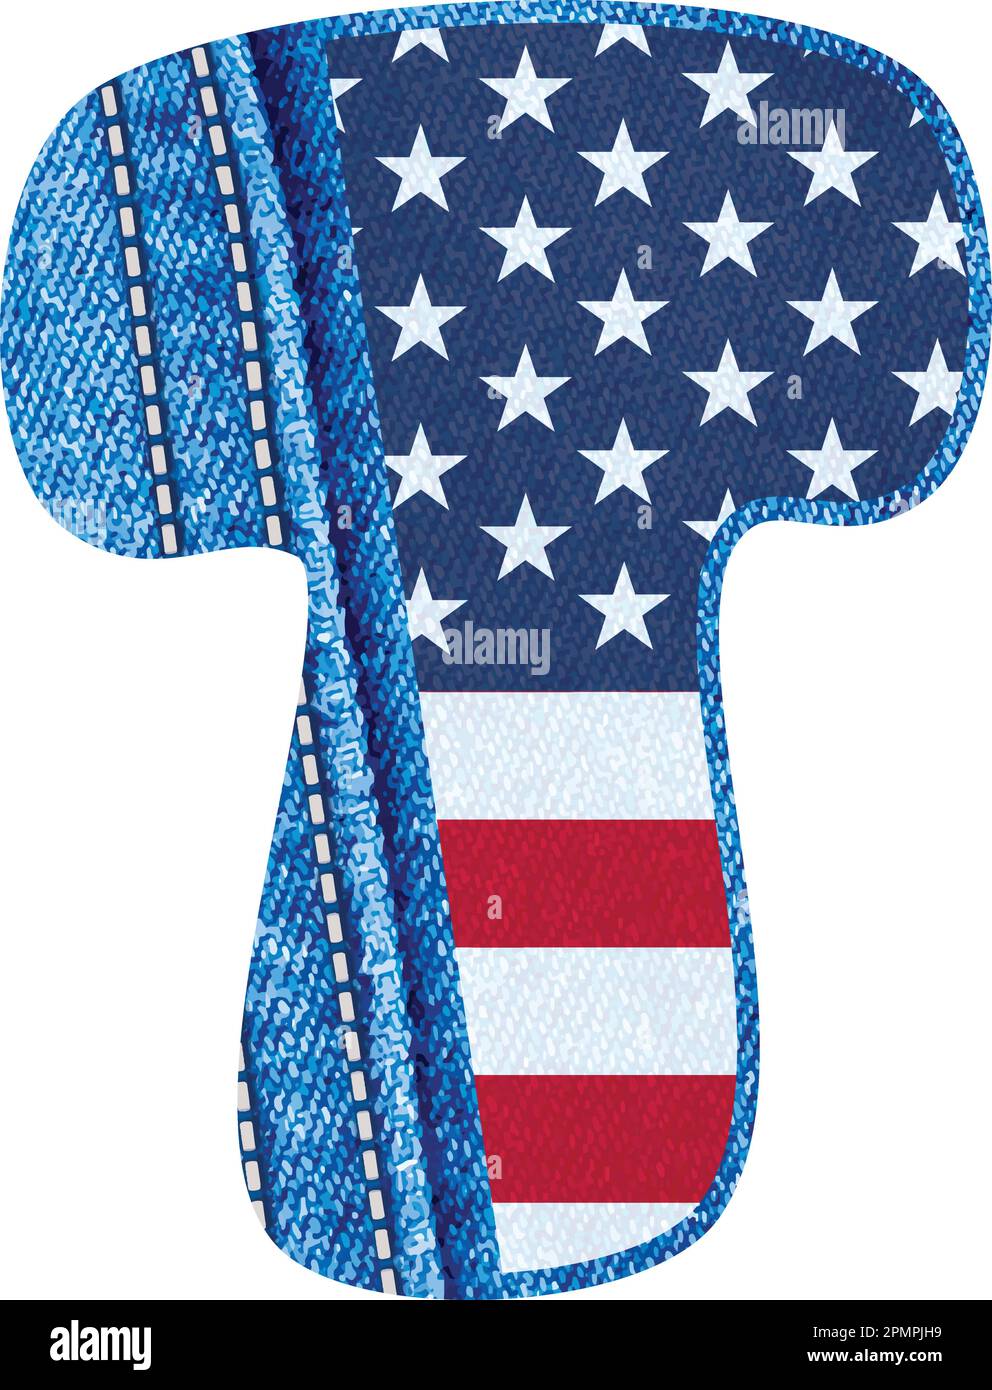 Der Vector-Buchstabe T mit der Textur von blauem jean-Material und US-Flagge - das Monogramm-T mit Denim-Material und amerikanischer Flagge - das jean-Alphabet Stock Vektor